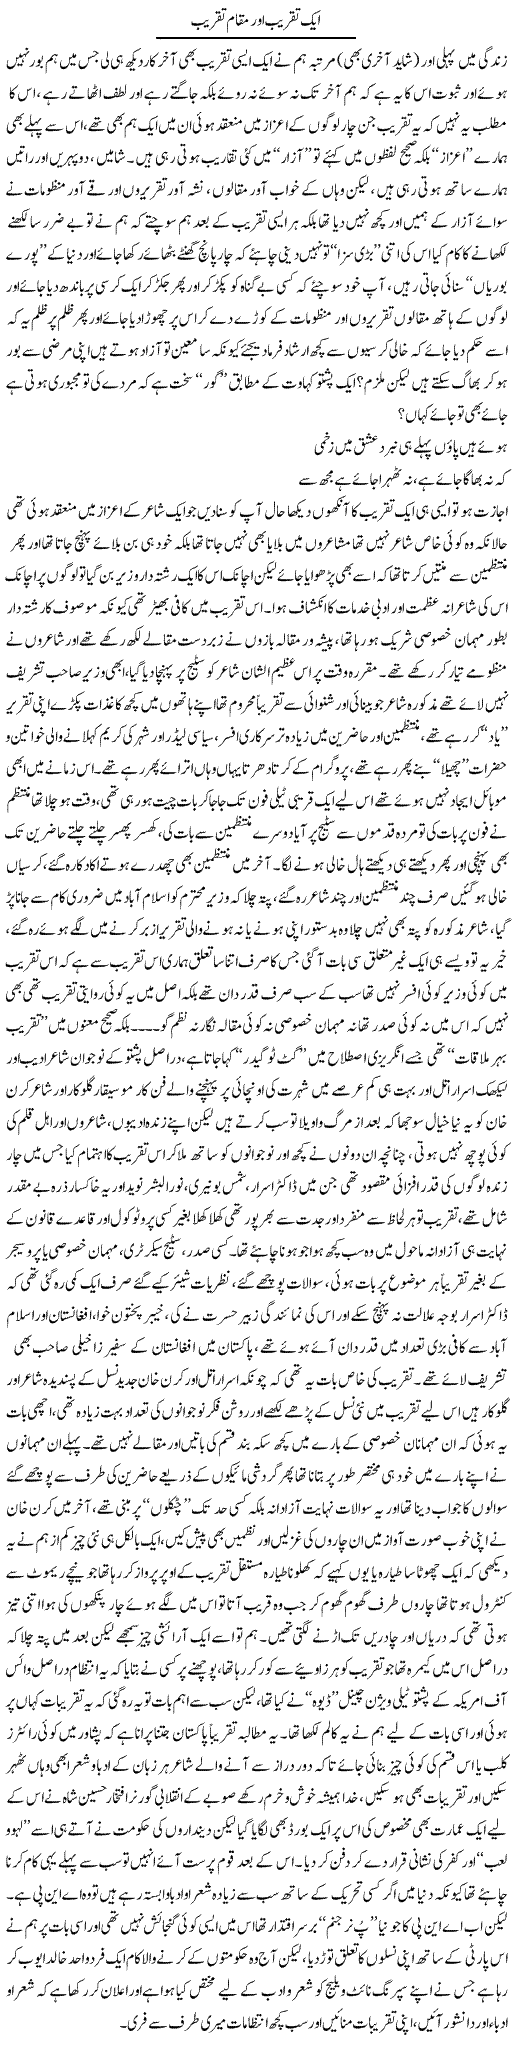 Aik Taqreeb Aor Maqam Taqreeb | Saad Ullah Jan Barq | Daily Urdu Columns